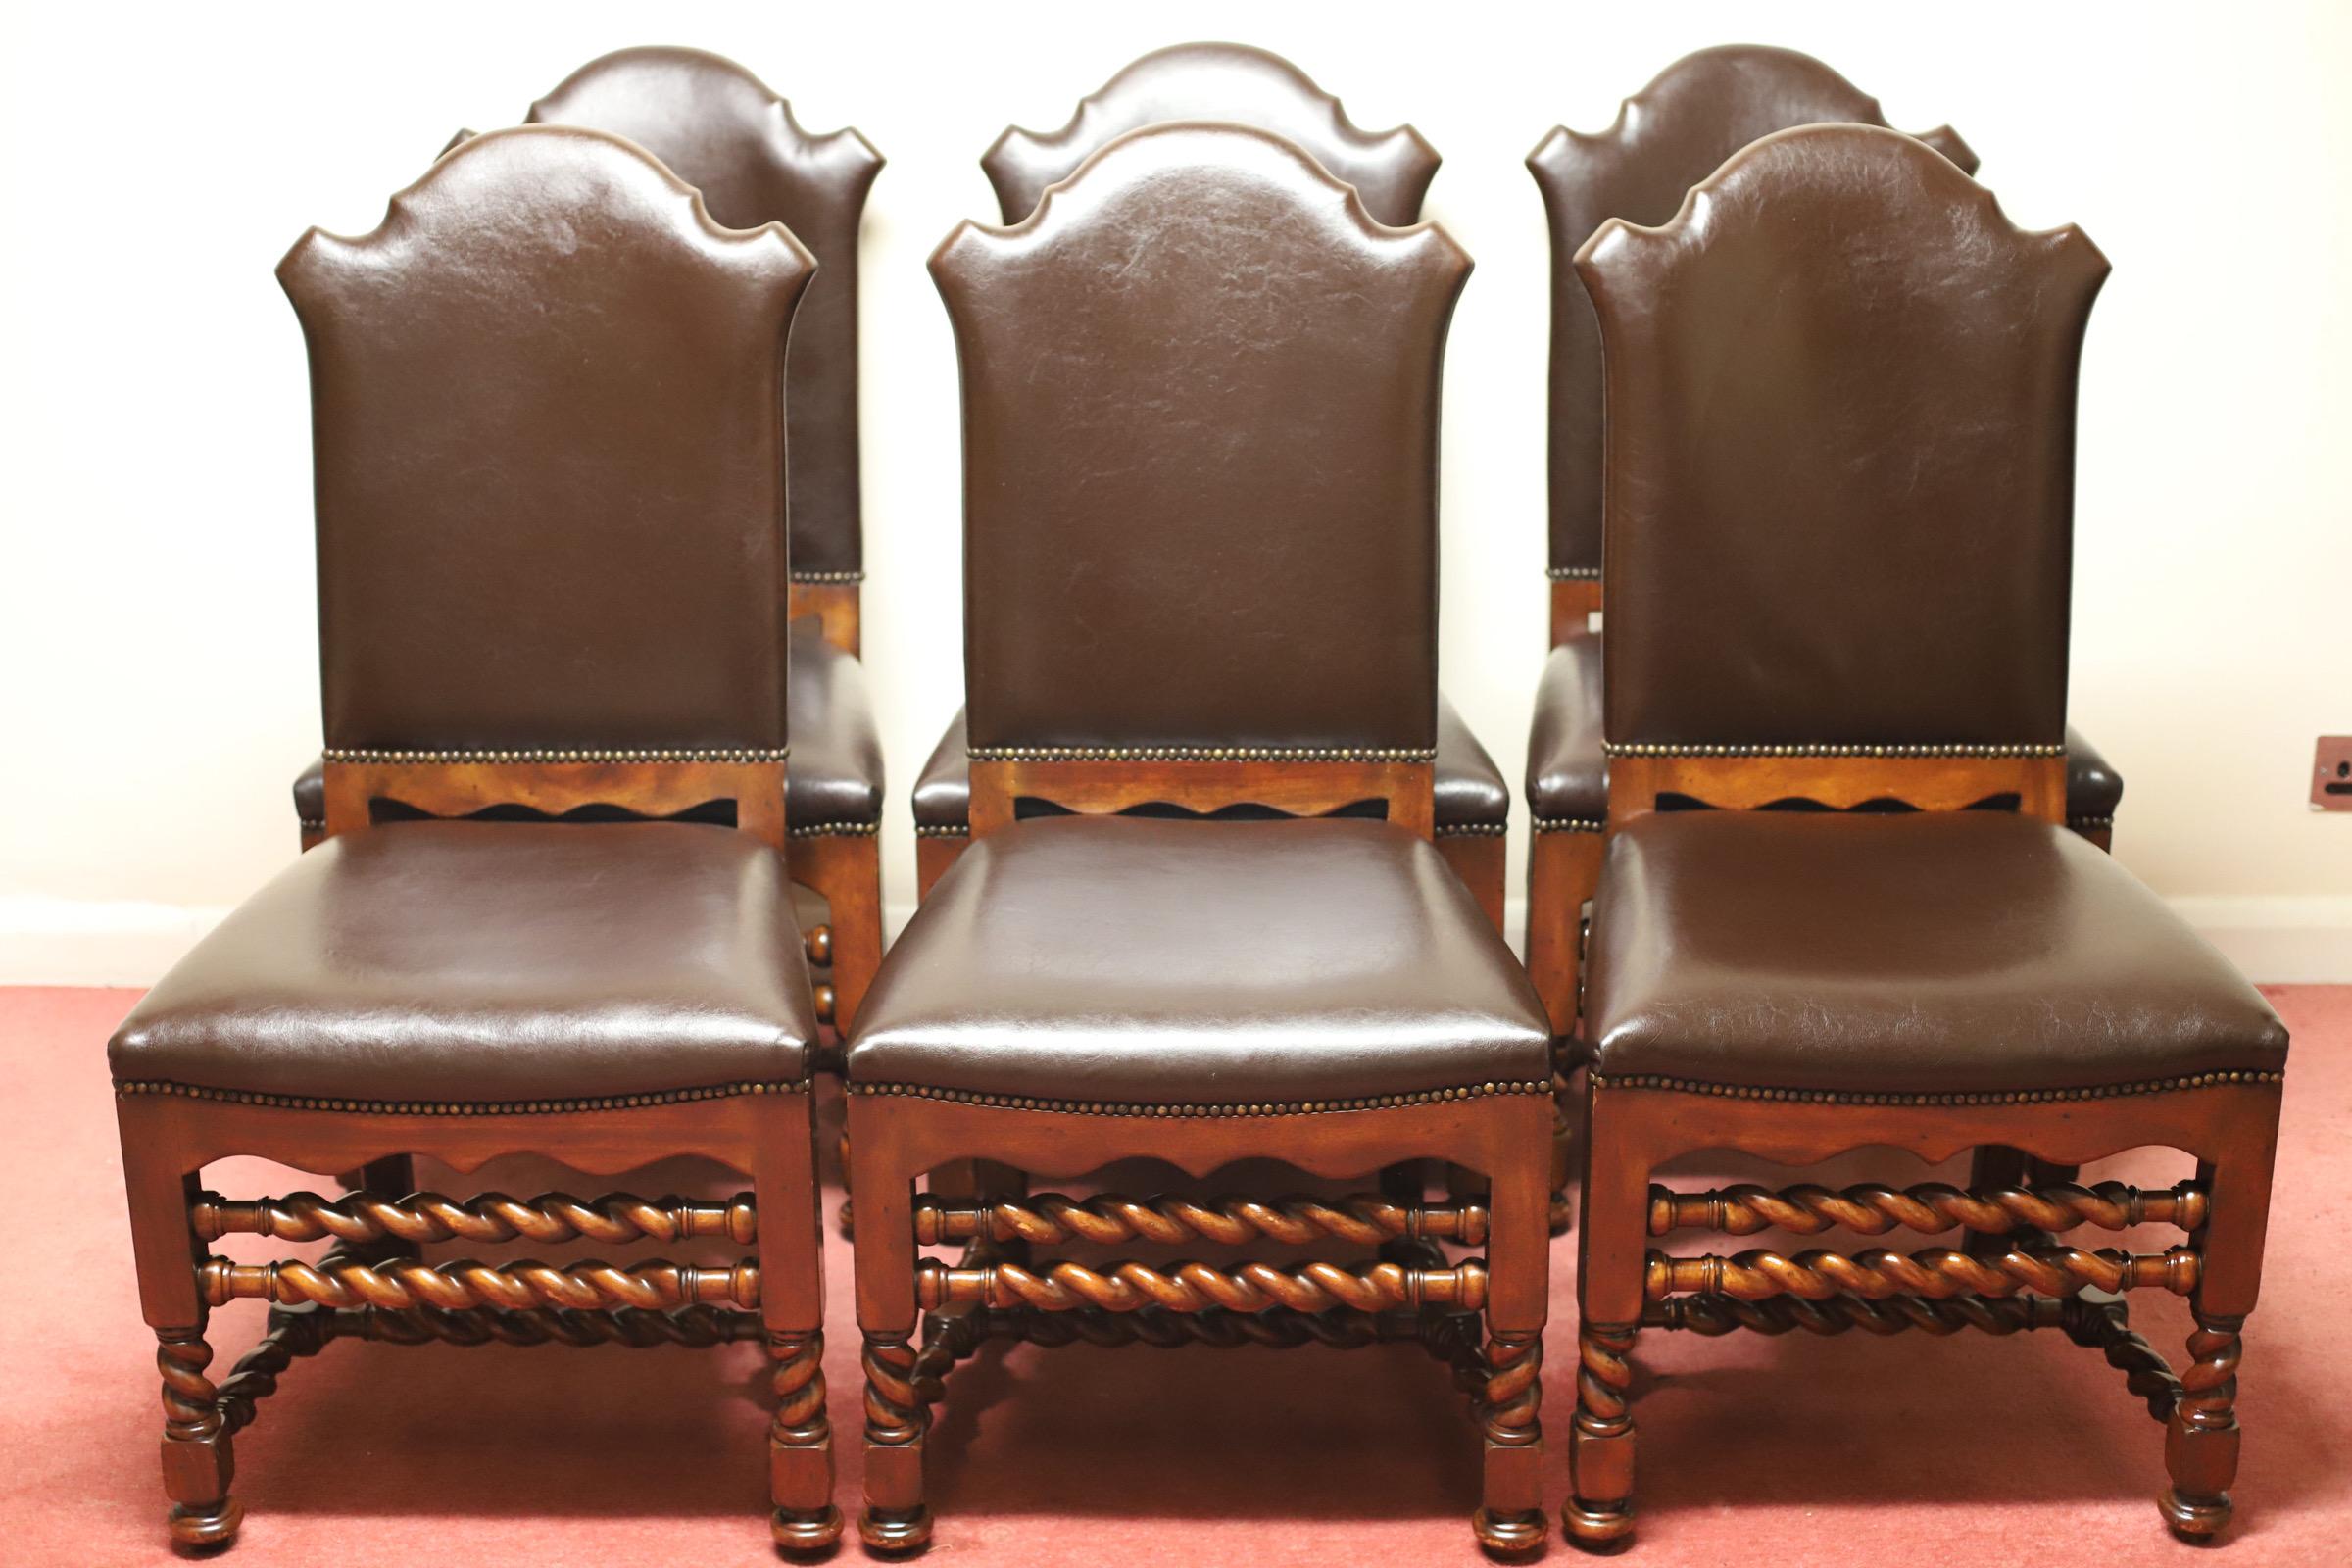 Bel ensemble de 6 chaises de salle à manger modernes en châtaignier tournées en spirale par Theodore Alexander.
Les sièges et les dossiers sont recouverts de cuir marron souple - avec des étiquettes de sécurité ignifuges attachées sous la base